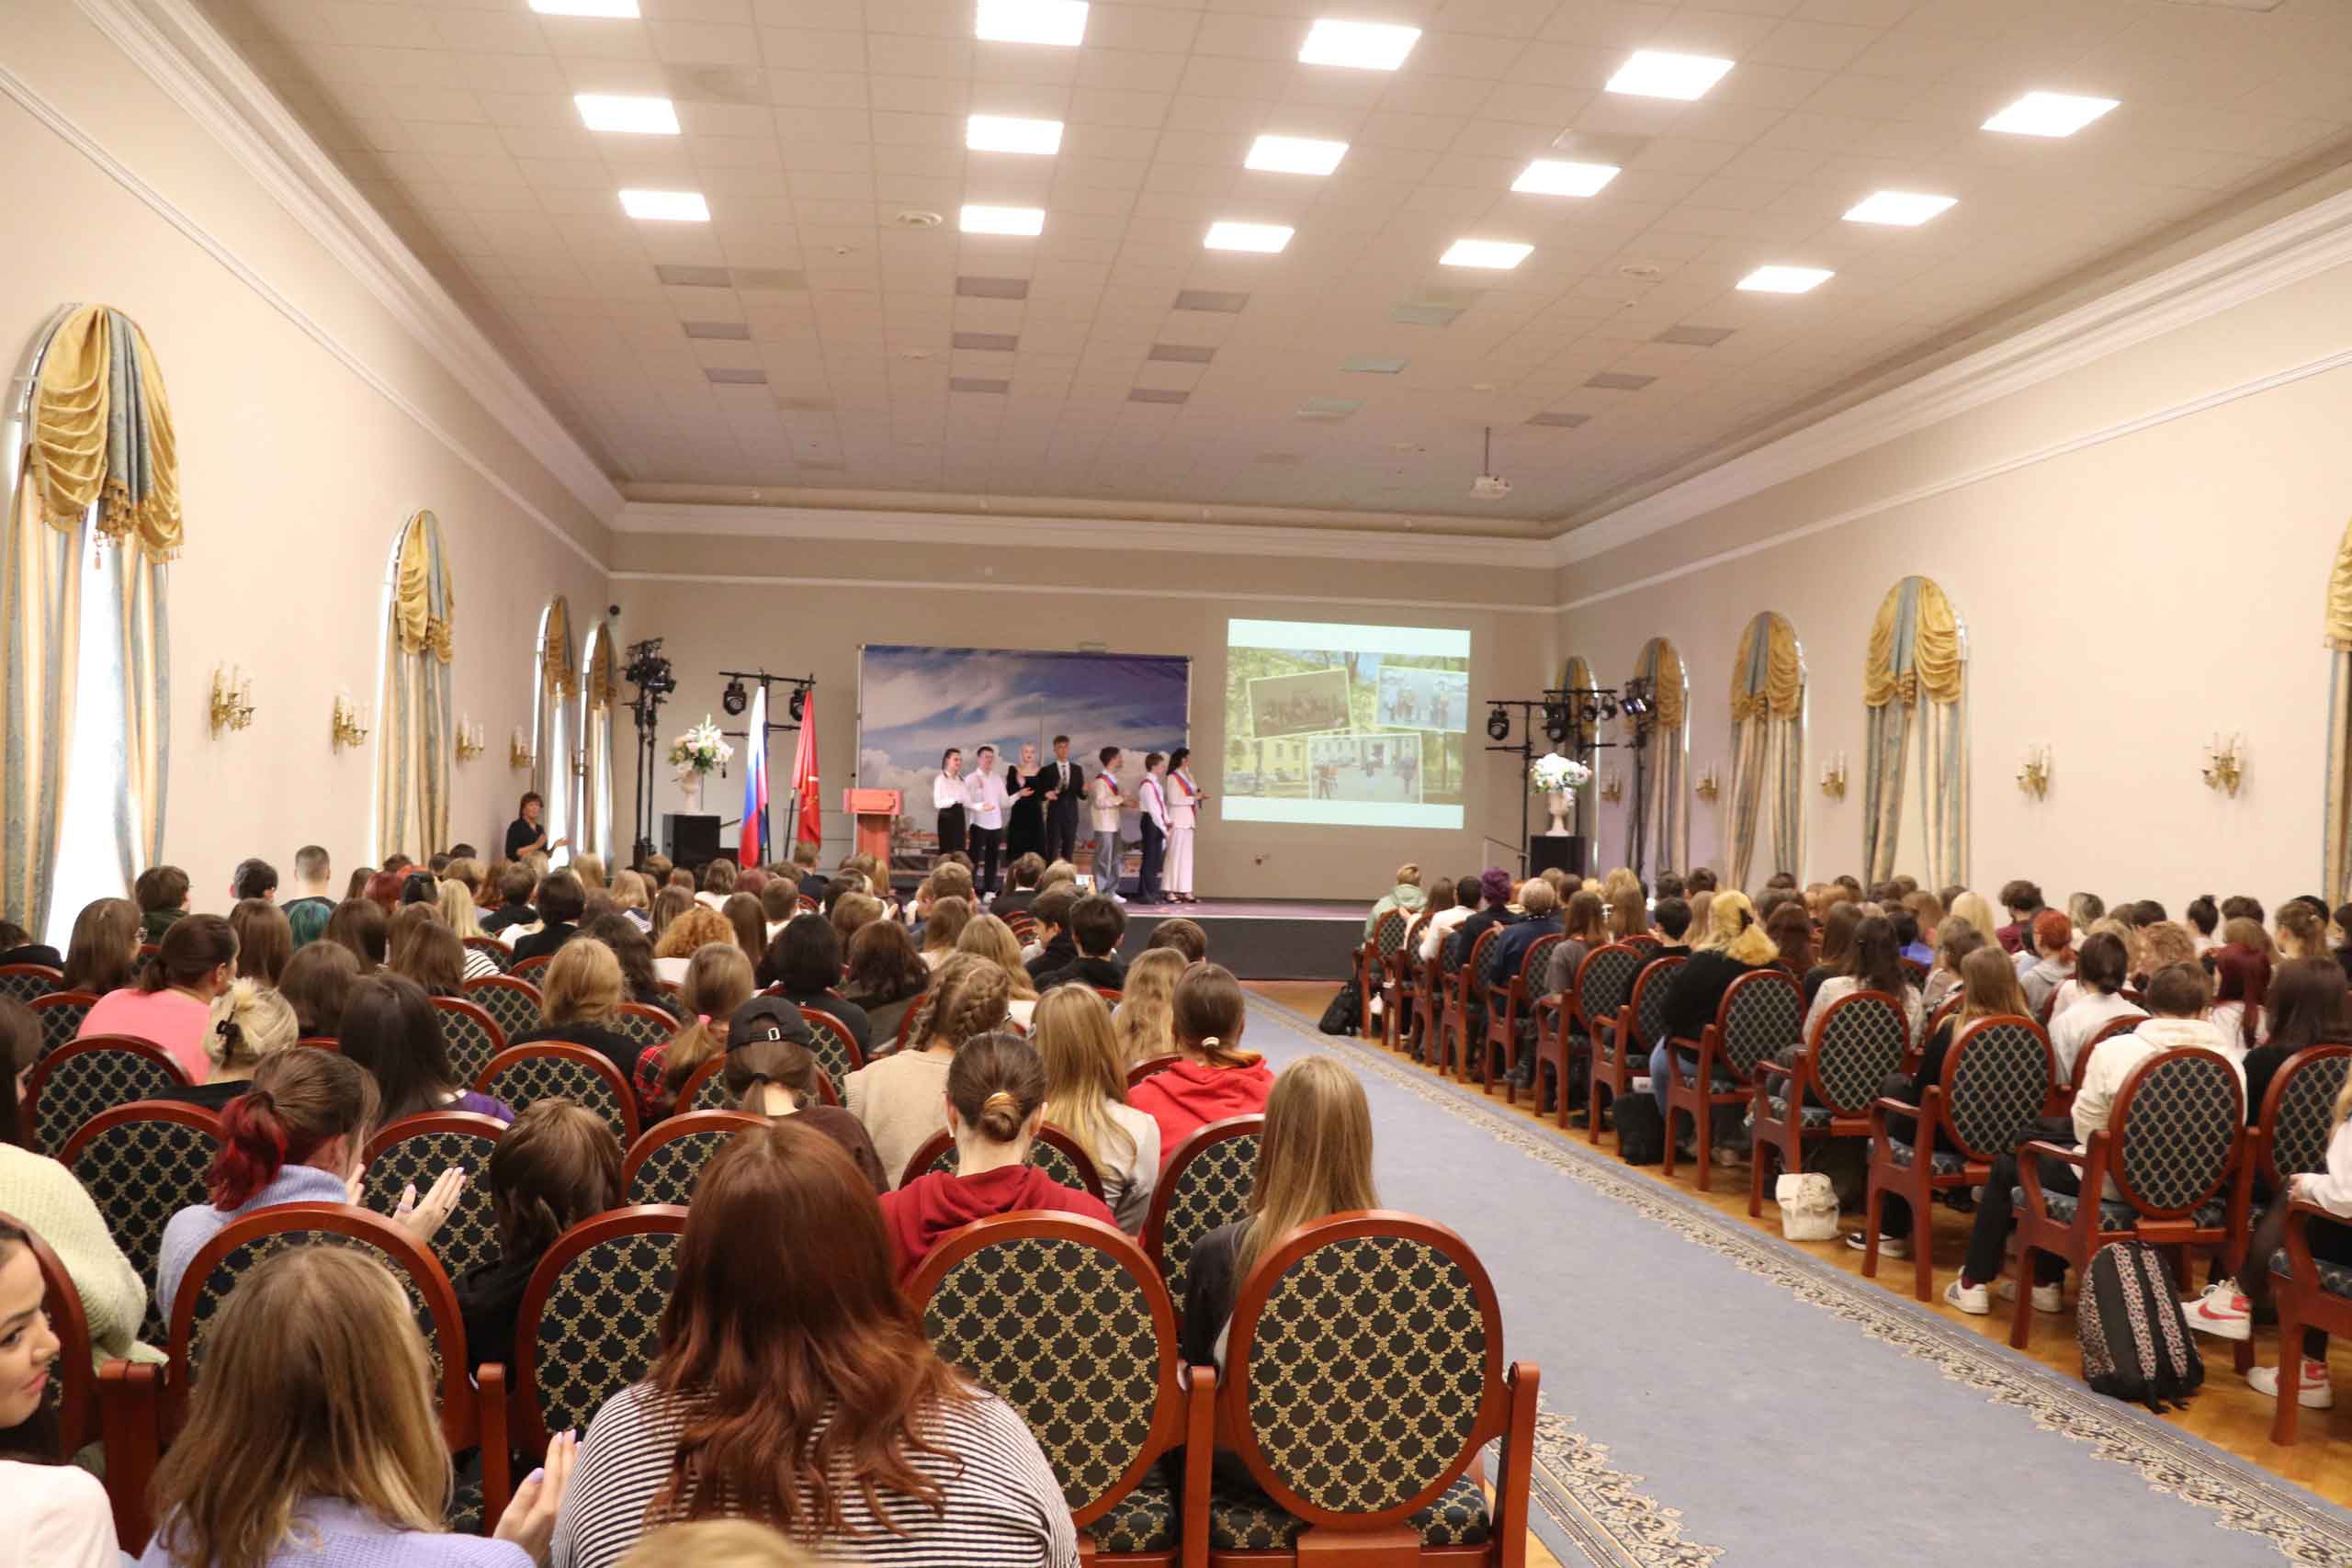 22 октября в Актовом зале Банковского колледжа празднично отметили 211-ую годовщину Императорского Александровского лицея